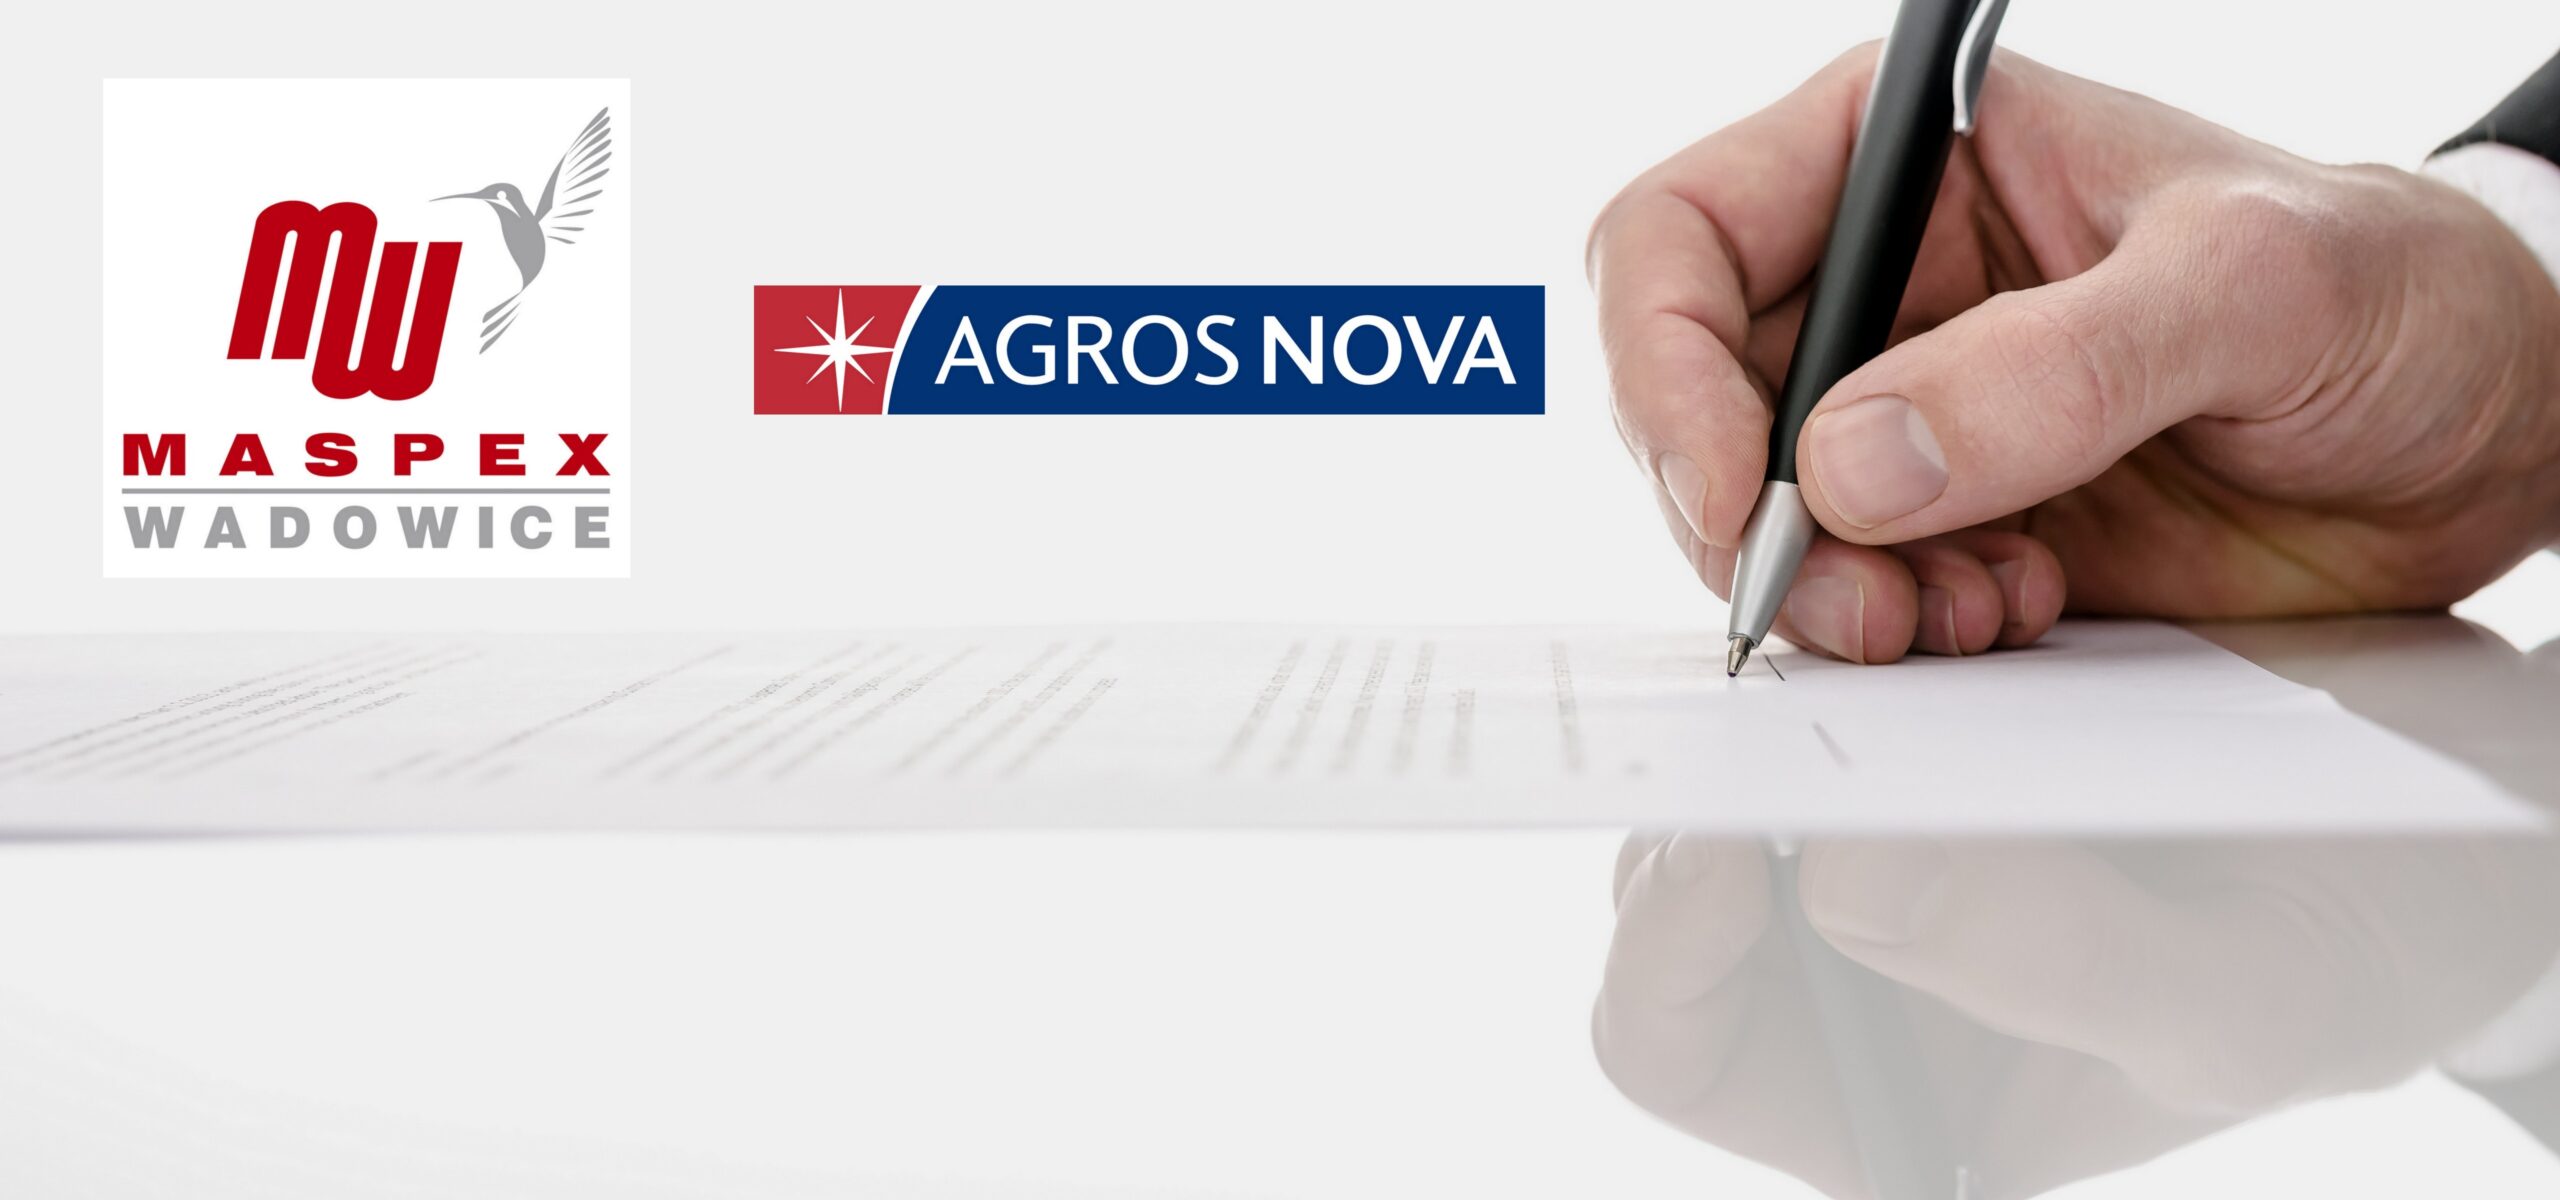 Agros-Nova sprzedaje marki Łowicz, Krakus i Kotlin Przetargi Mediarun com Agros Nova Maspex scaled